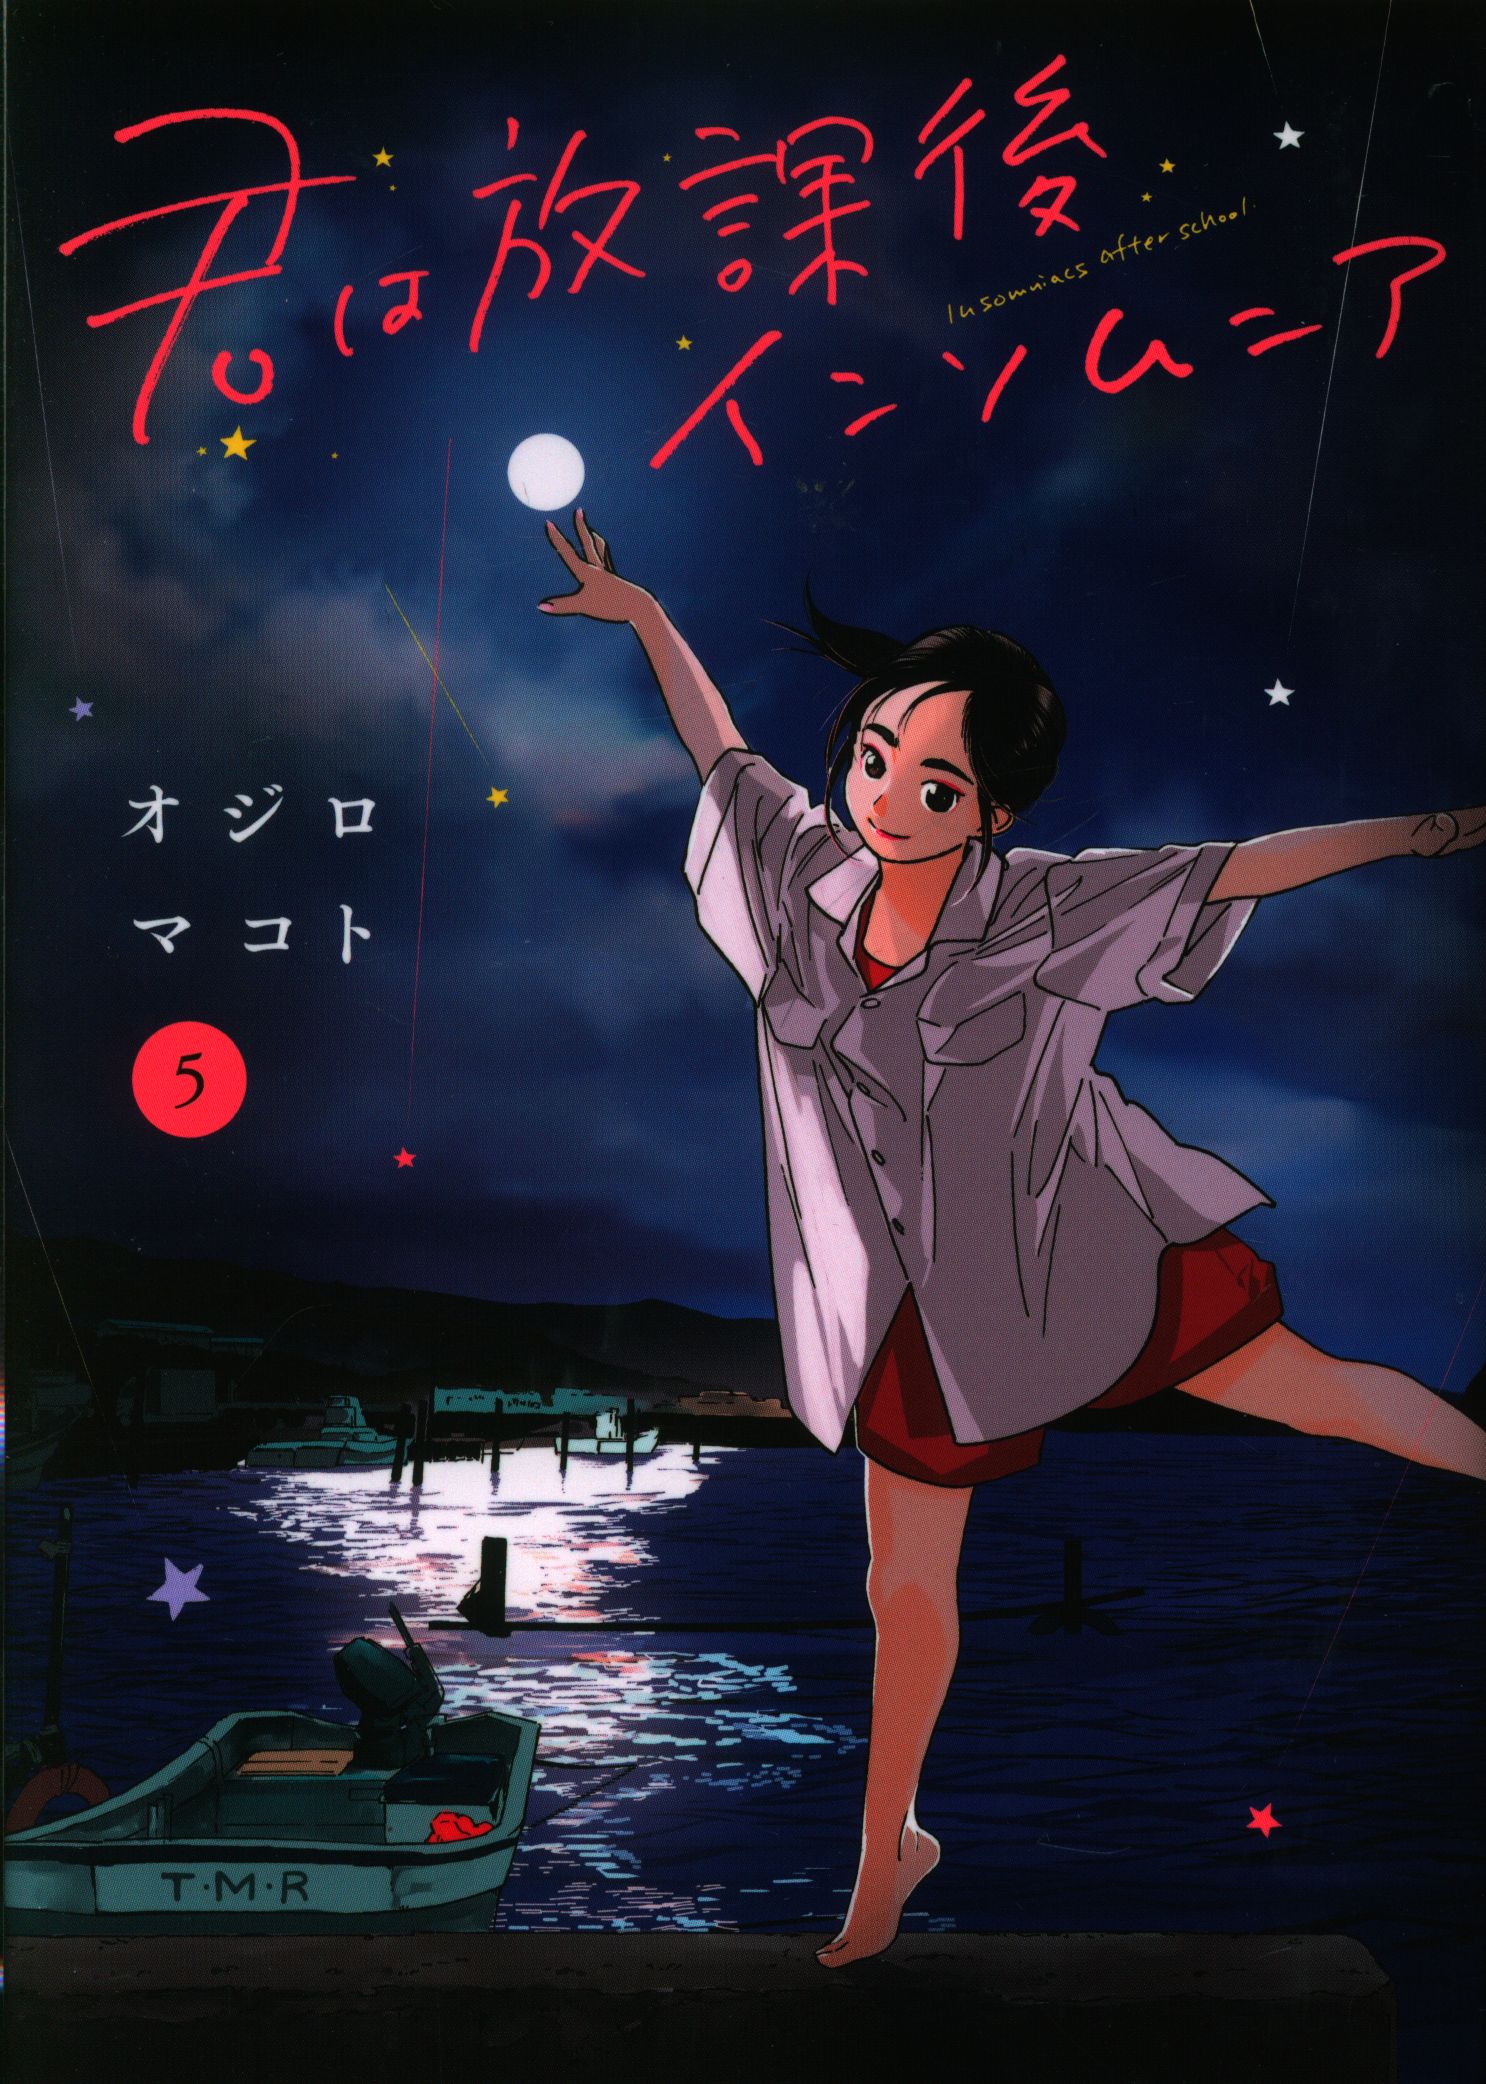 ART] Kimi wa Houkago Insomnia Volume 5 cover illustration : r/manga